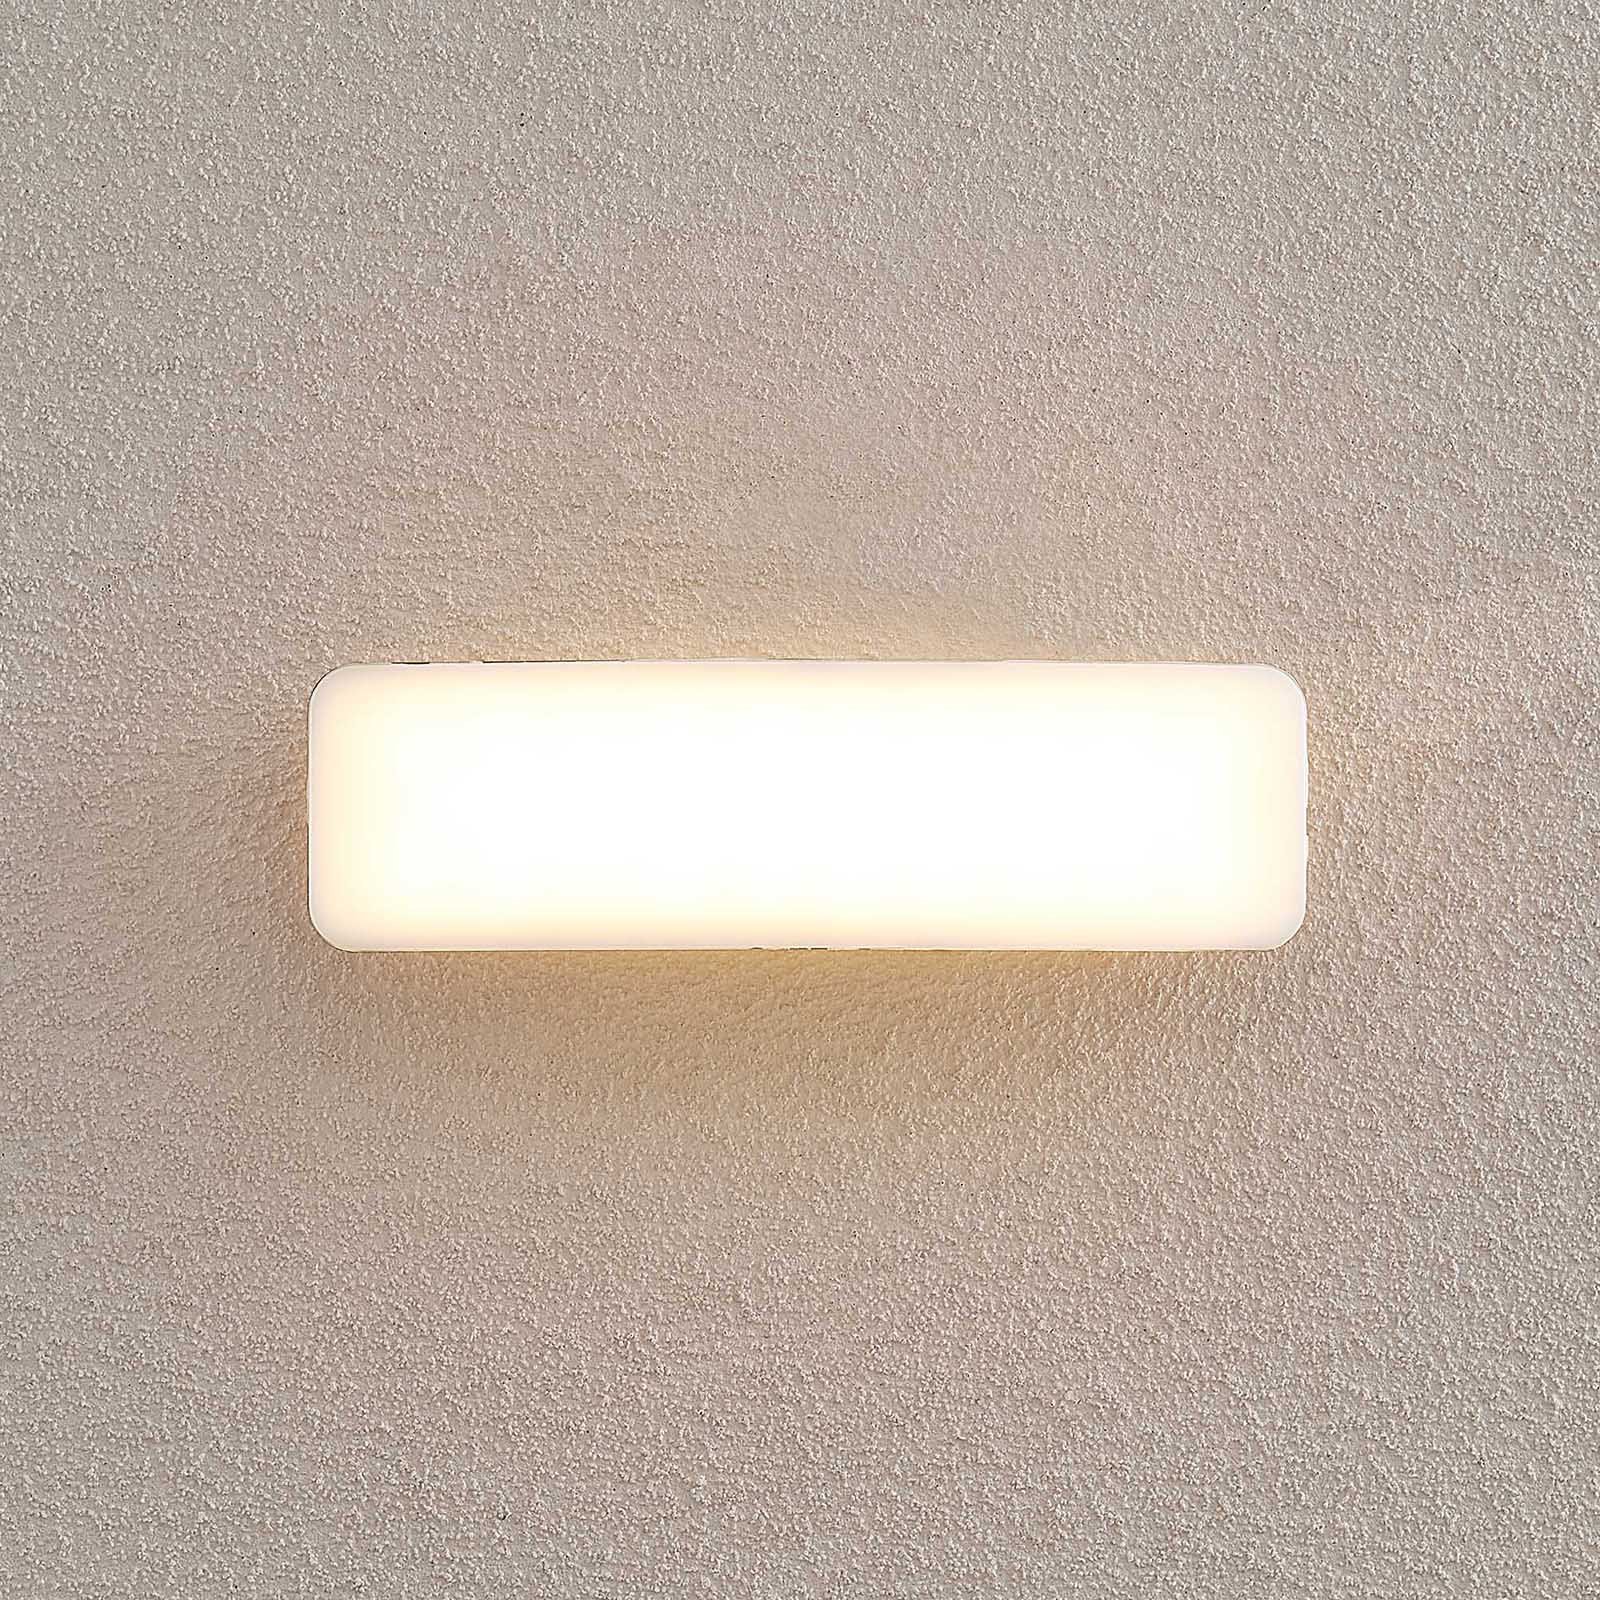 Lucande Lolke LED outdoor wall light